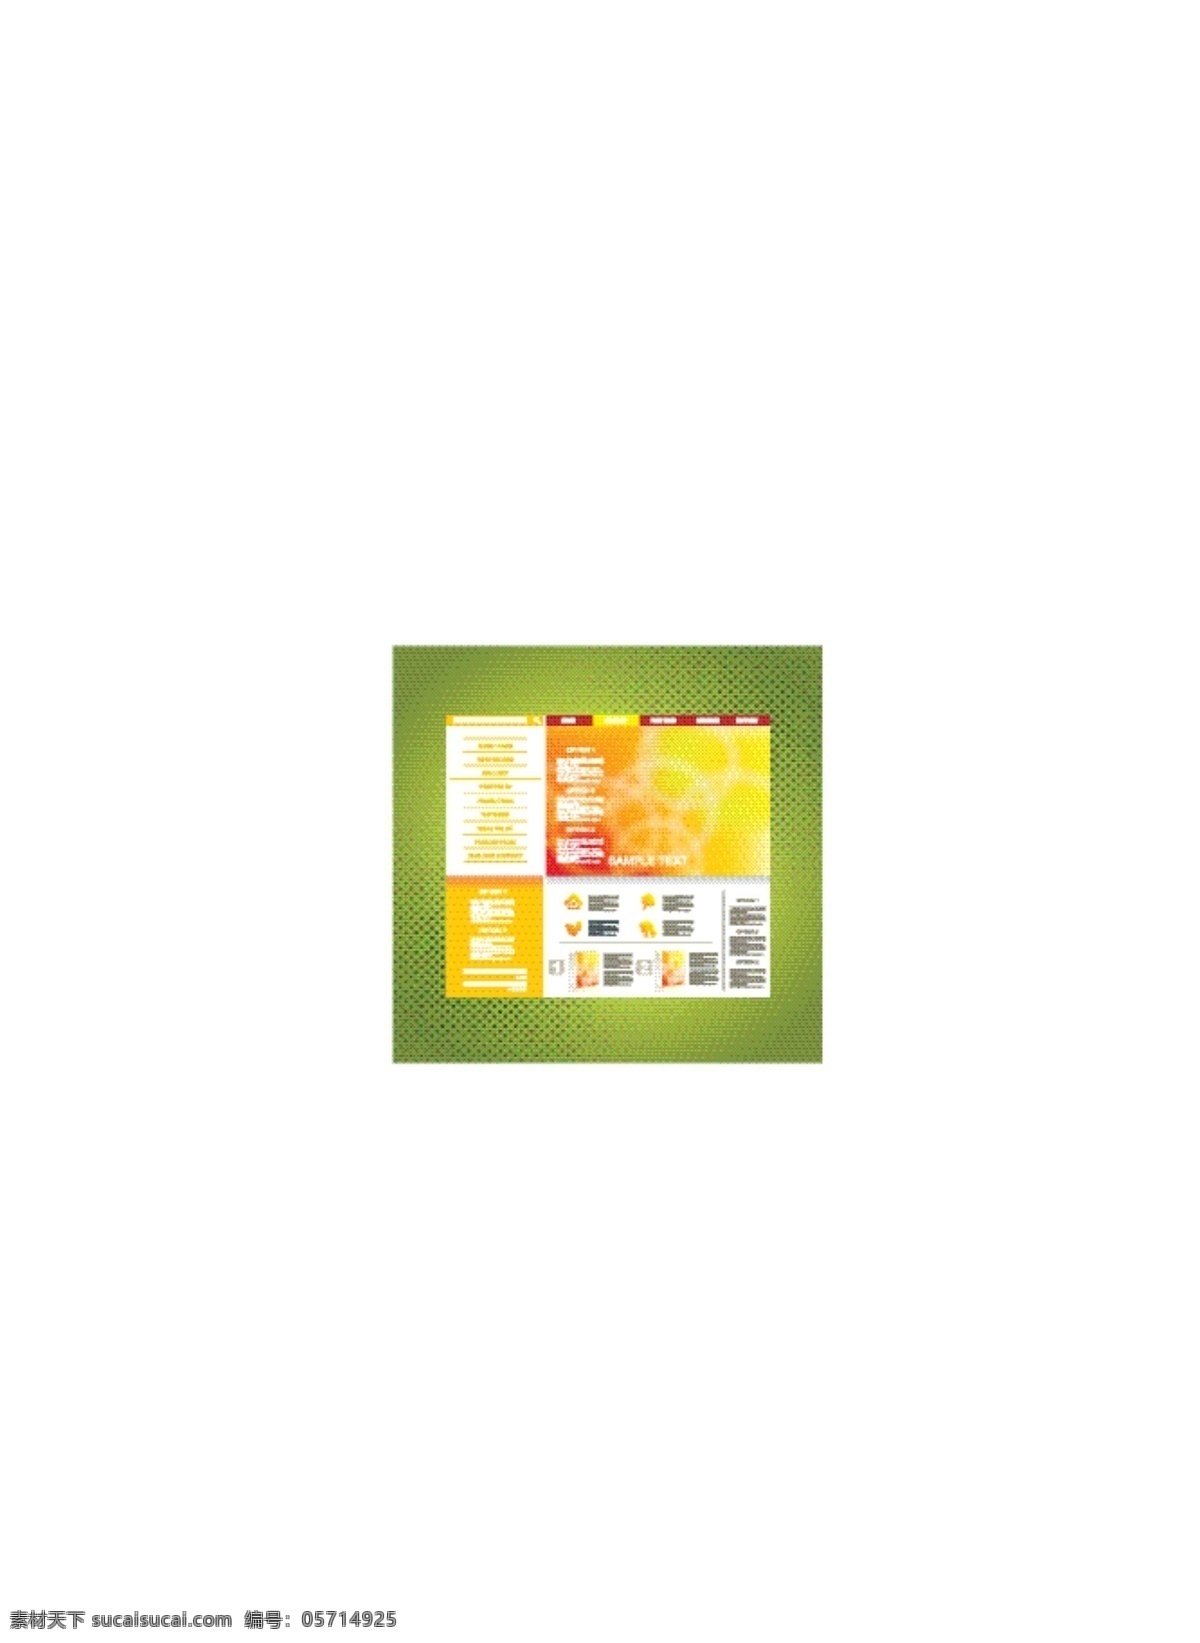 橙色 网站 模板 矢量 eps格式 网站模板 韩国 个人 网页 模版 网页素材 网页模板